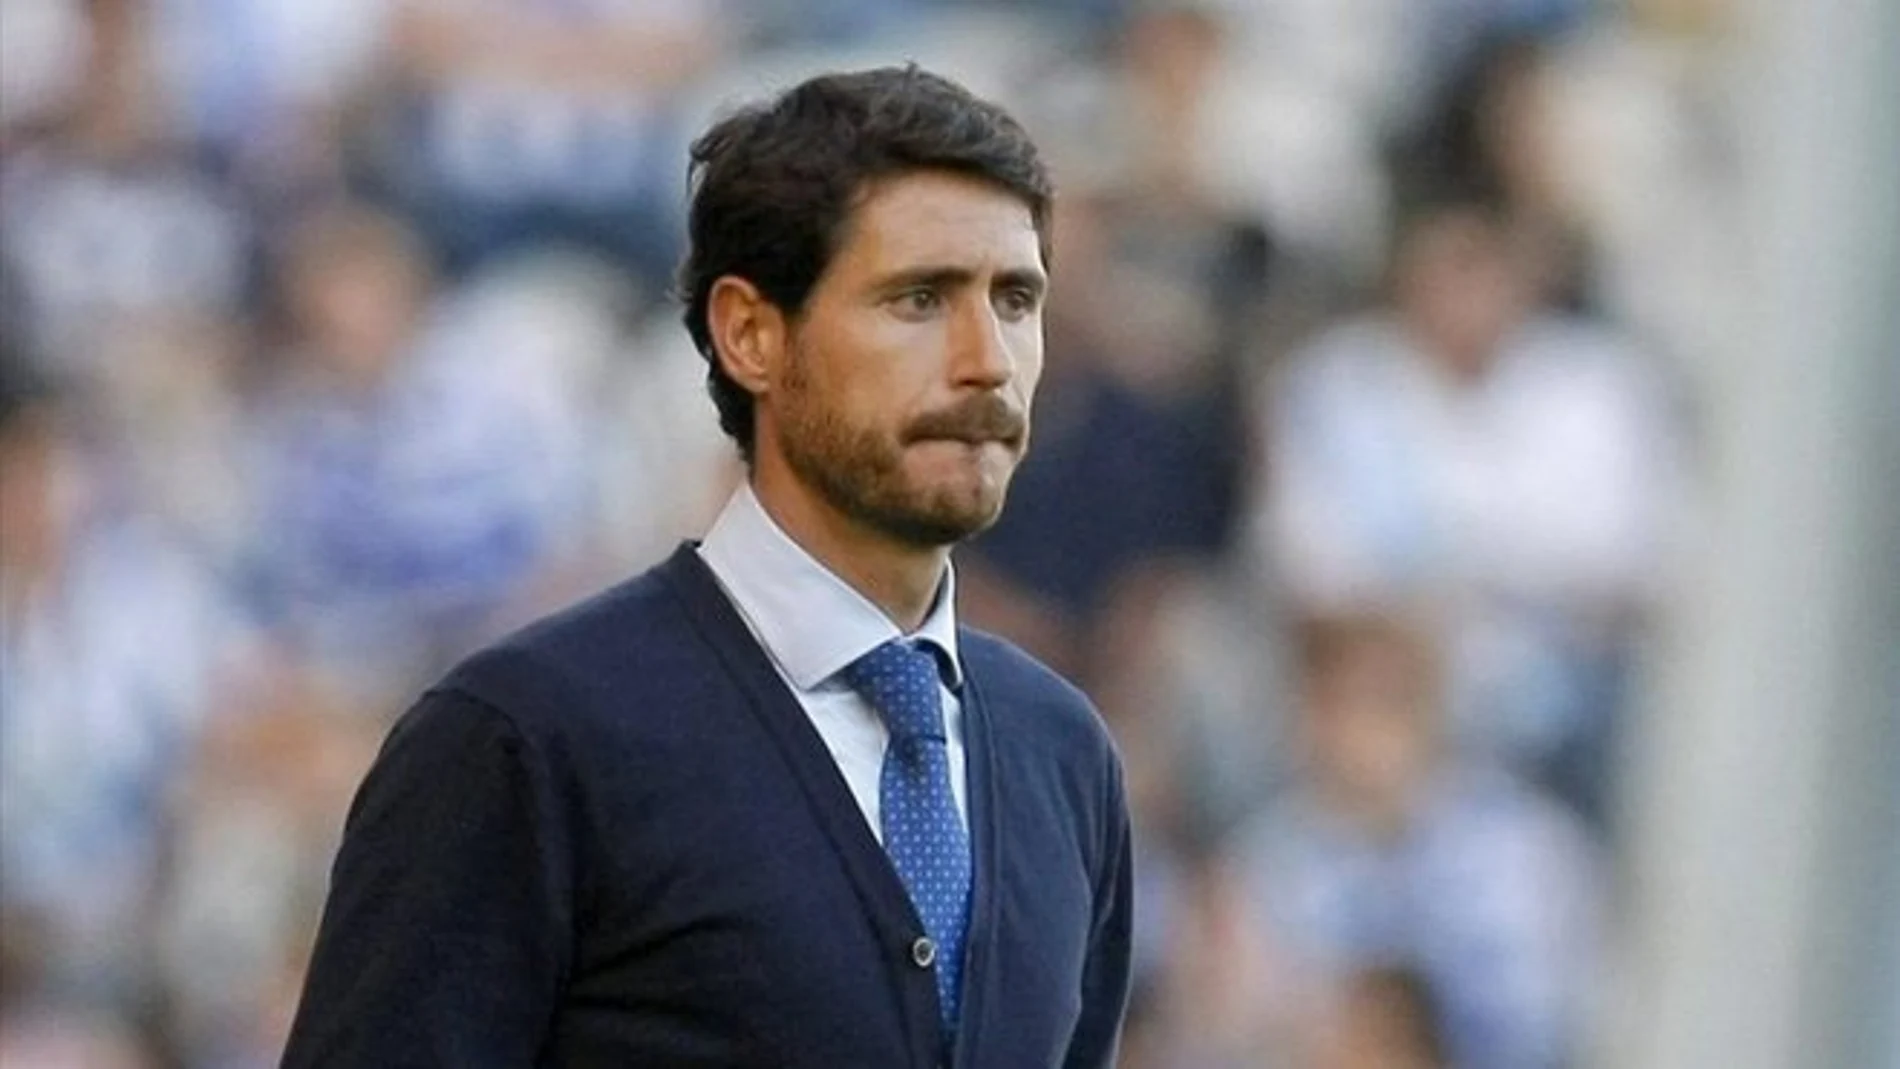 Víctor Sánchez del Amo, entrenador del Málaga /EFE